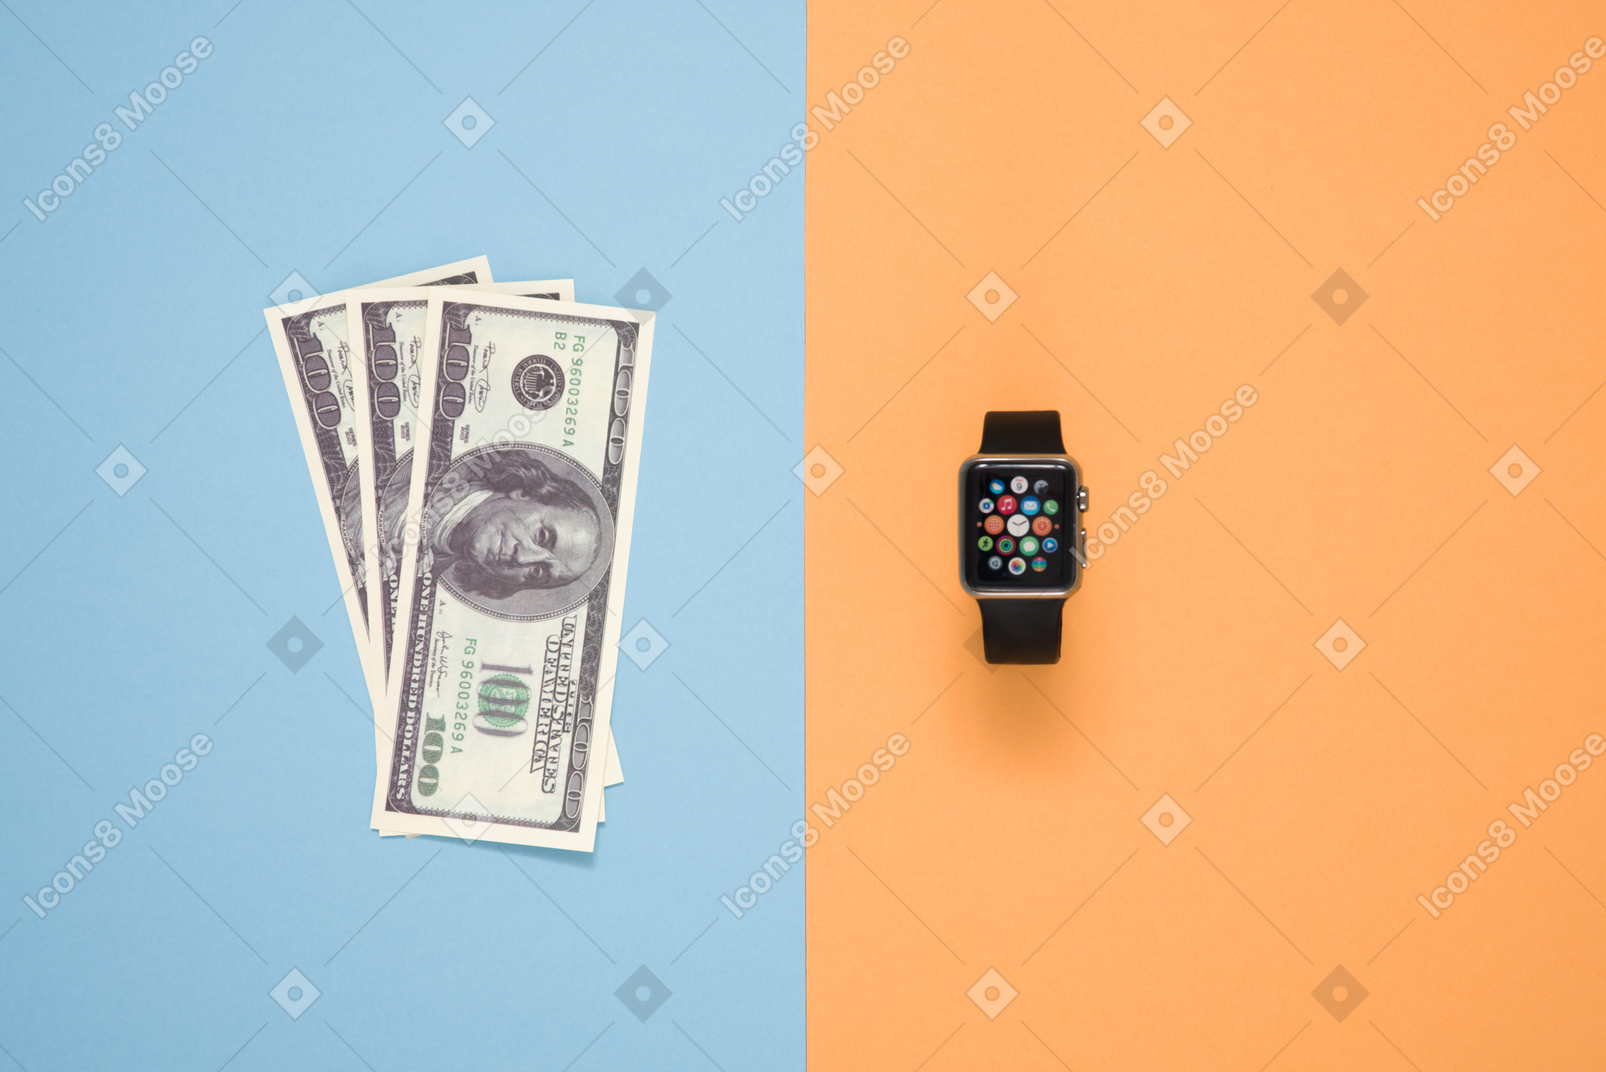 Sind smartwatches, die es wert sind gekauft zu werden